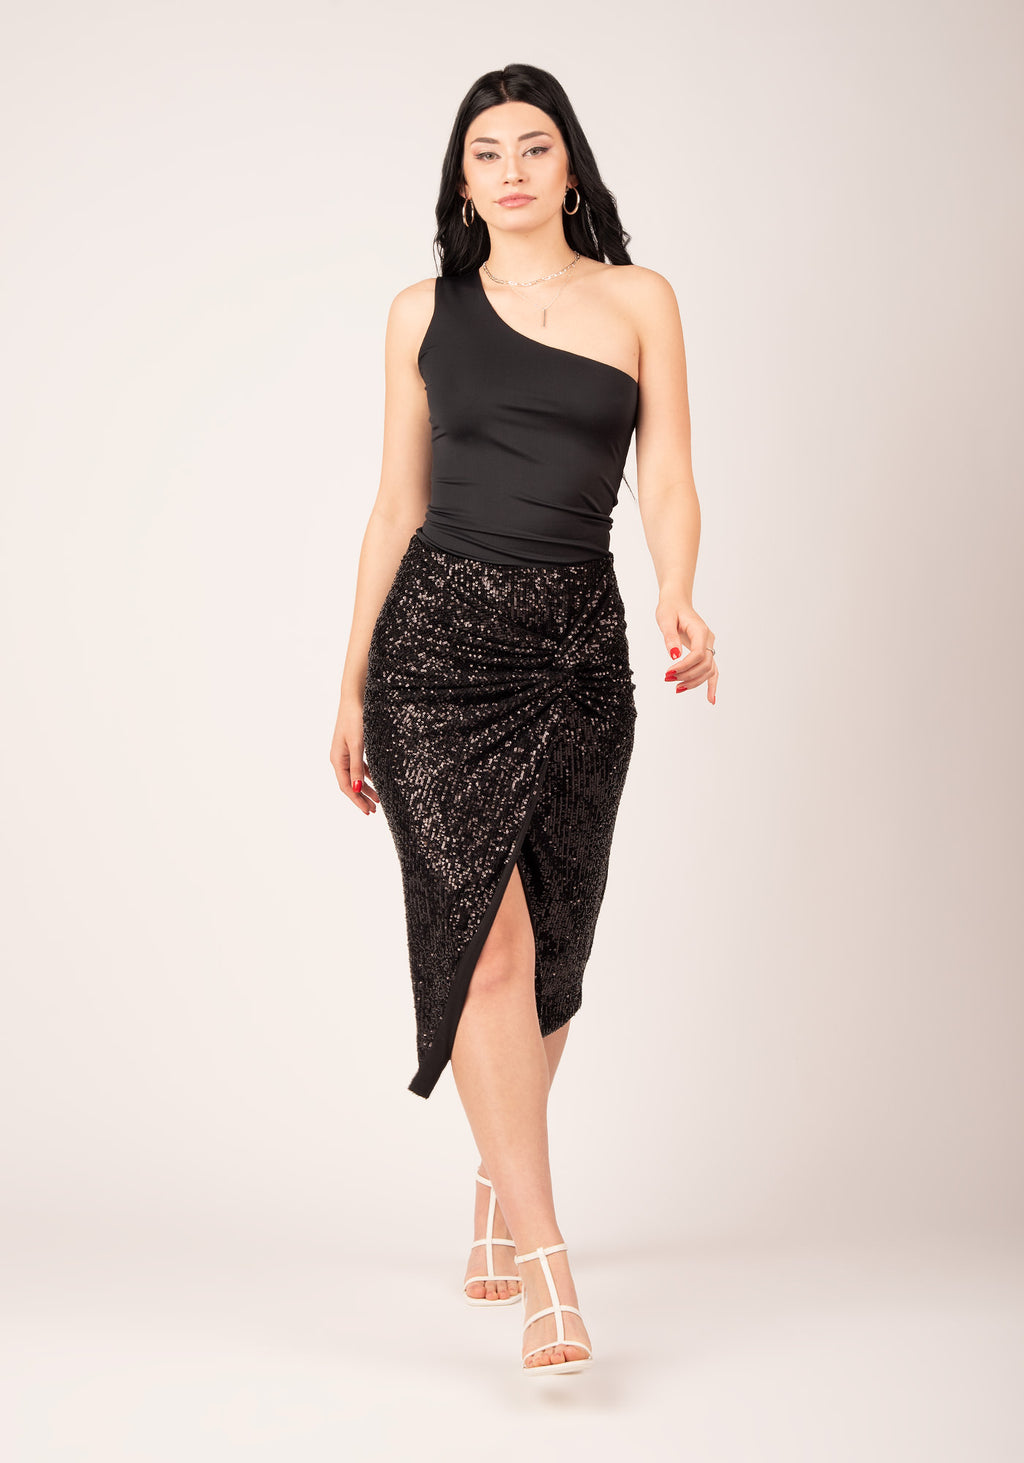 Asymmetrical Slit Knot Front Skirt in Black Sequins